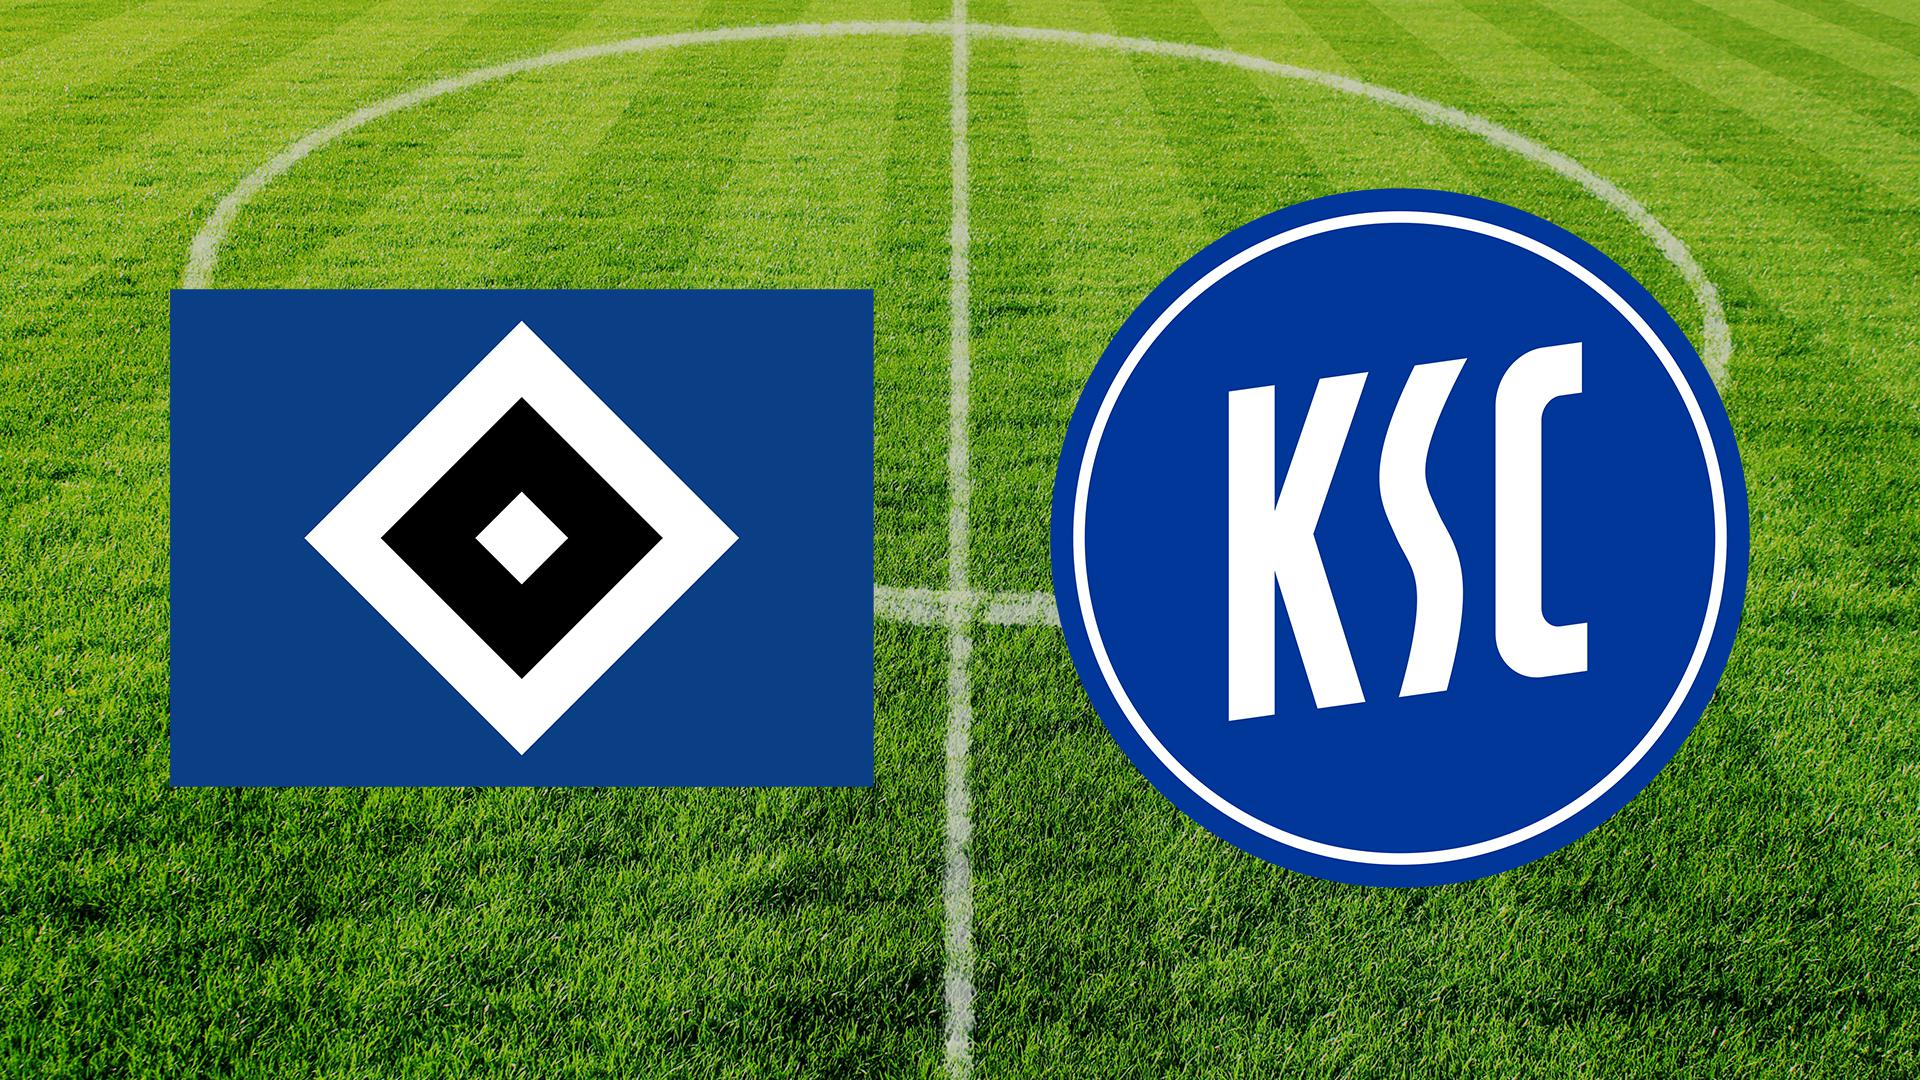 Logo des HSV und KSC, im Hintergrund ein Fußballfeld